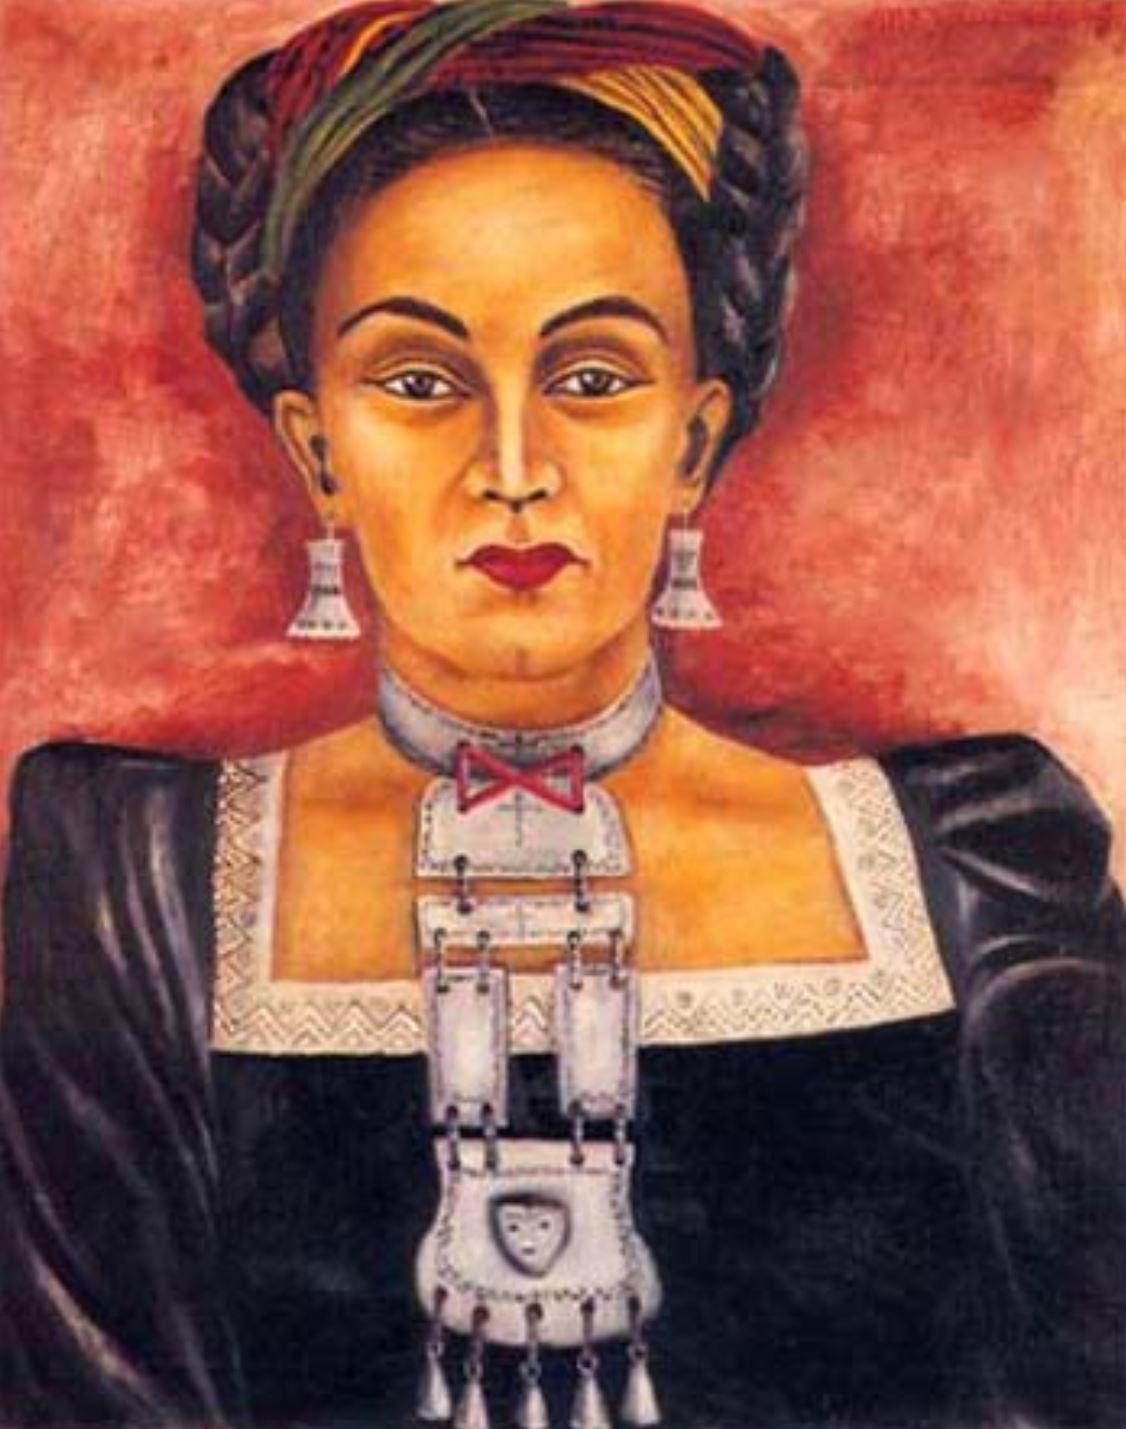 Heroínas: María Izquierdo pintora mexicana